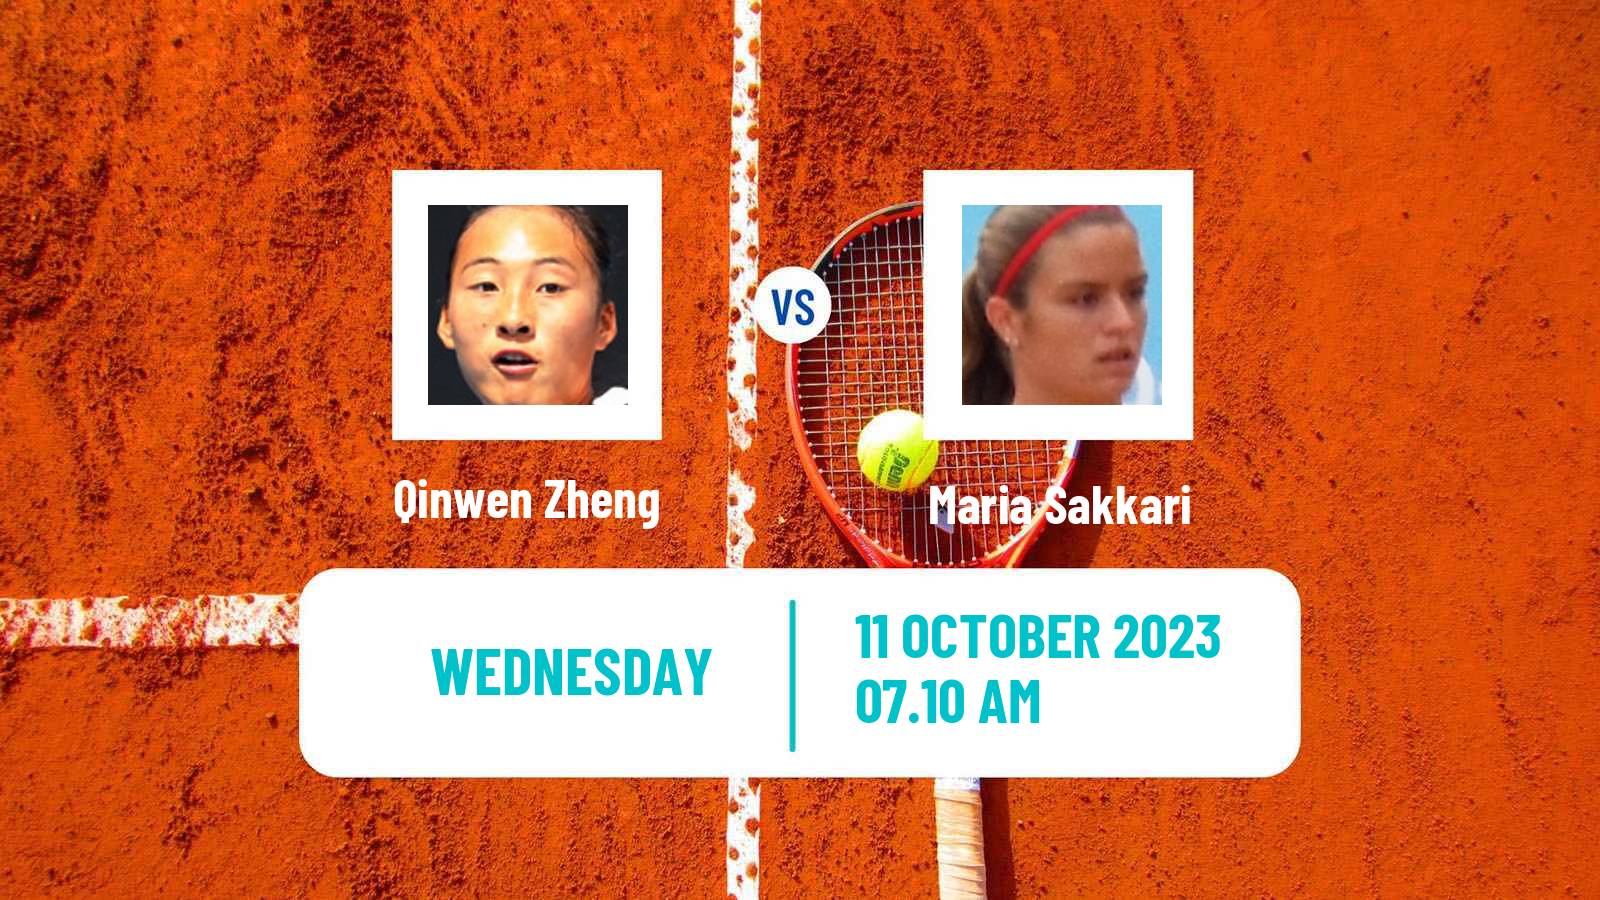 Tennis WTA Zhengzhou Qinwen Zheng - Maria Sakkari